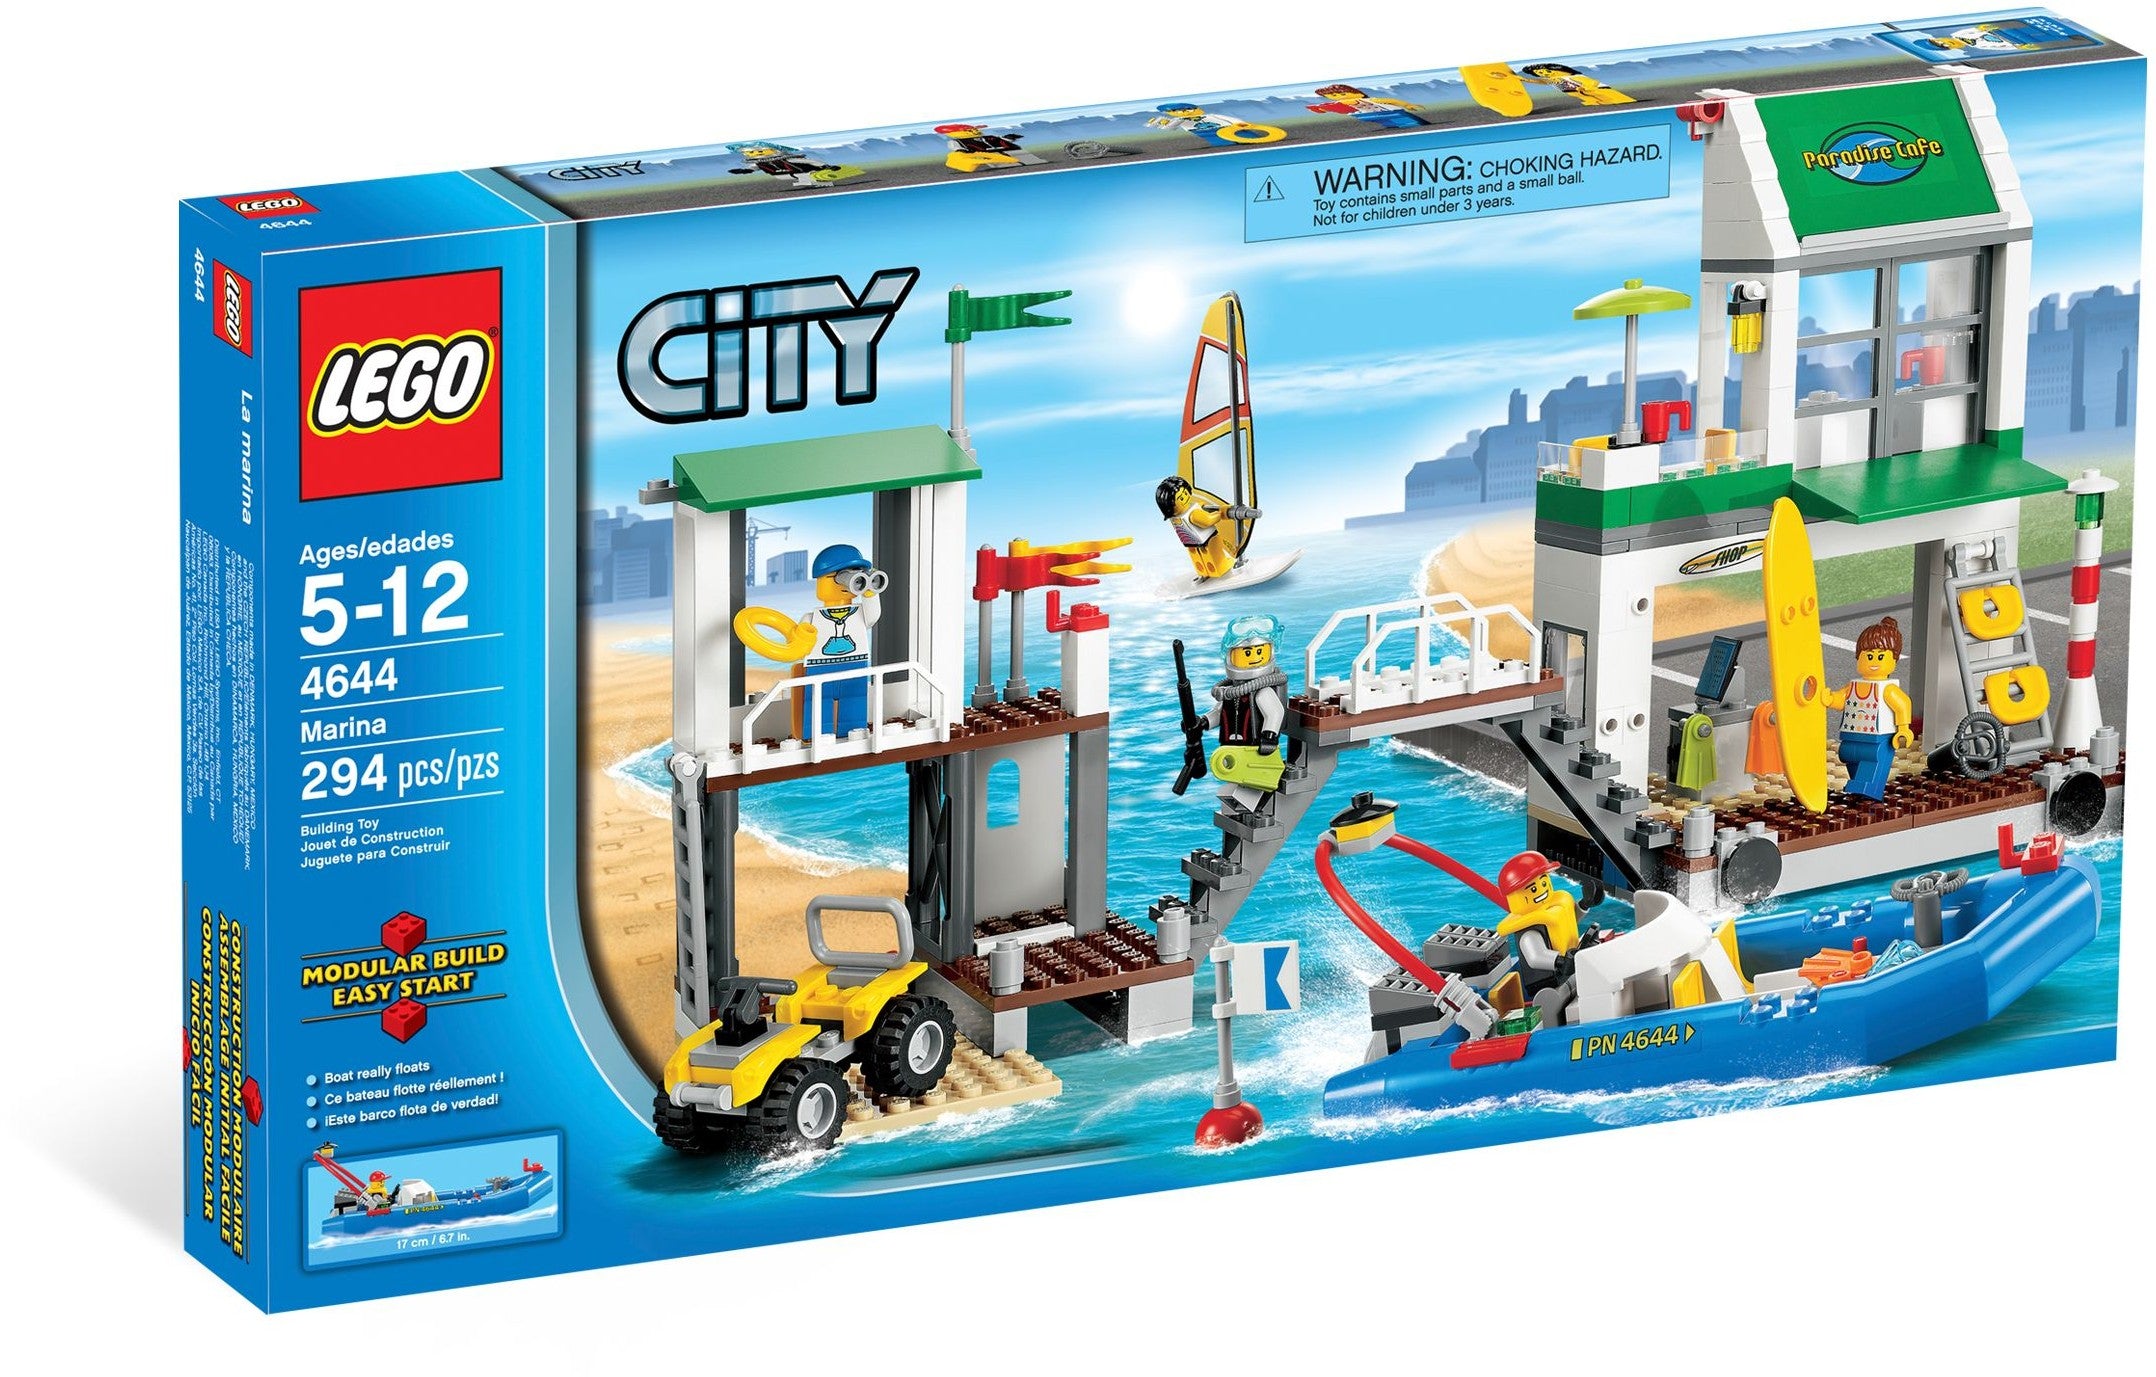 Lego City 4644 - Marina